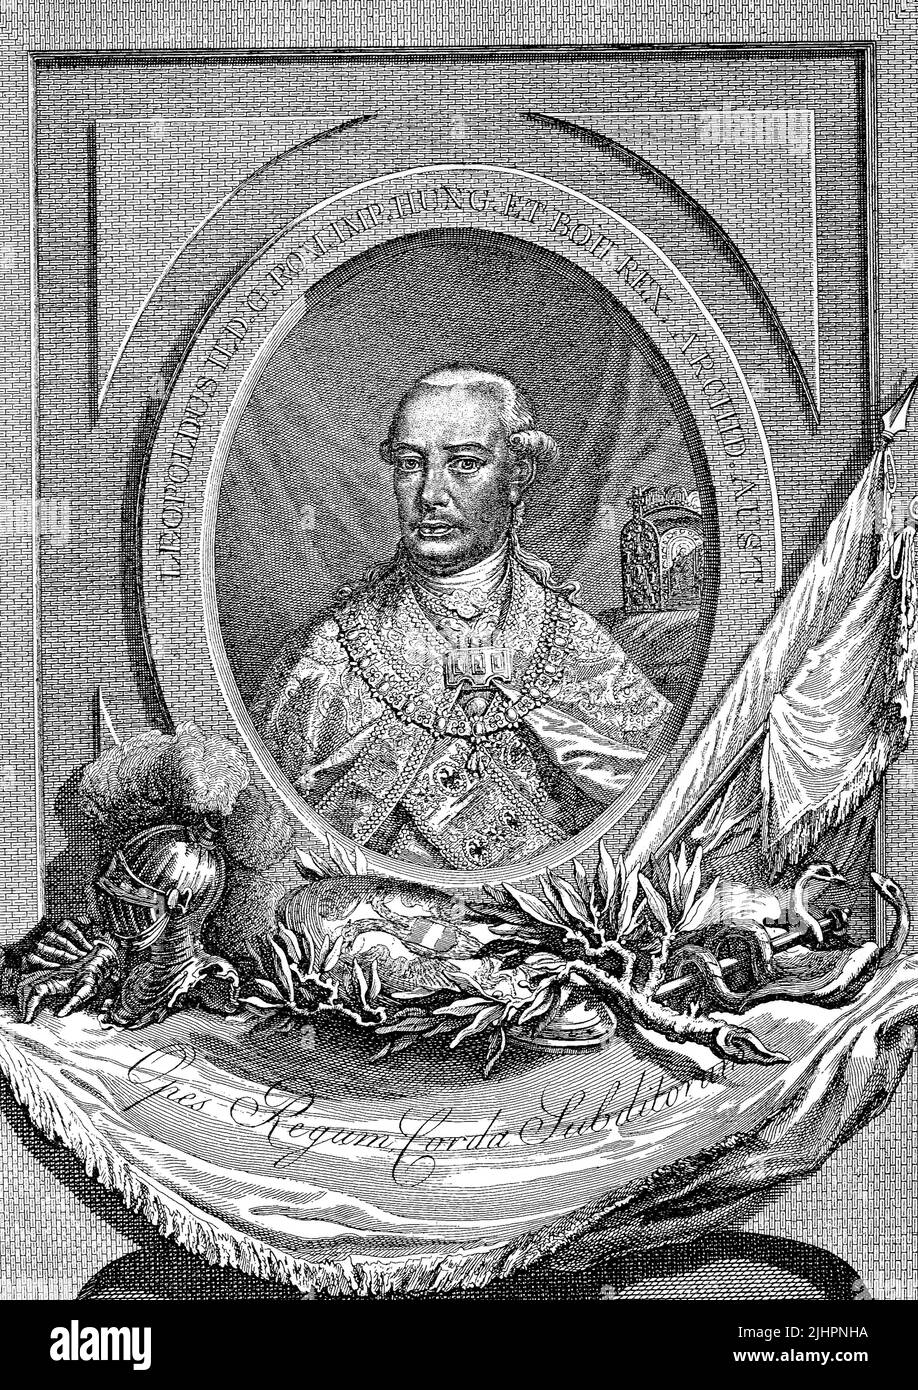 Leopold II. (Geboren 5. Mai 1747, gestorben 1. März 1792) war Erzherzog von Österreich aus dem Haus Habsburg-Lothringen, von 1765 bis 1790 Grossherzog der Toskana sowie von 1790 bis 1792 Kaiser des Heiligen Römischen Reiches und König von Böhmen, Kroatien und Ungarn / Leopold II. (Geboren am 5. Mai 1747, gestorben am 1. März 1792) War Erzherzog von Österreich aus dem Hause Habsburg-Lothringen, Großherzog der Toskana von 1765 bis 1790 und Kaiser des Heiligen Römischen Reiches und König von Böhmen, Kroatien und Ungarn von 1790 bis 1792, Historisch, digital restaurierte Produktion einer Originalvorlage aus dem 19. Jahrhundert, g Stockfoto